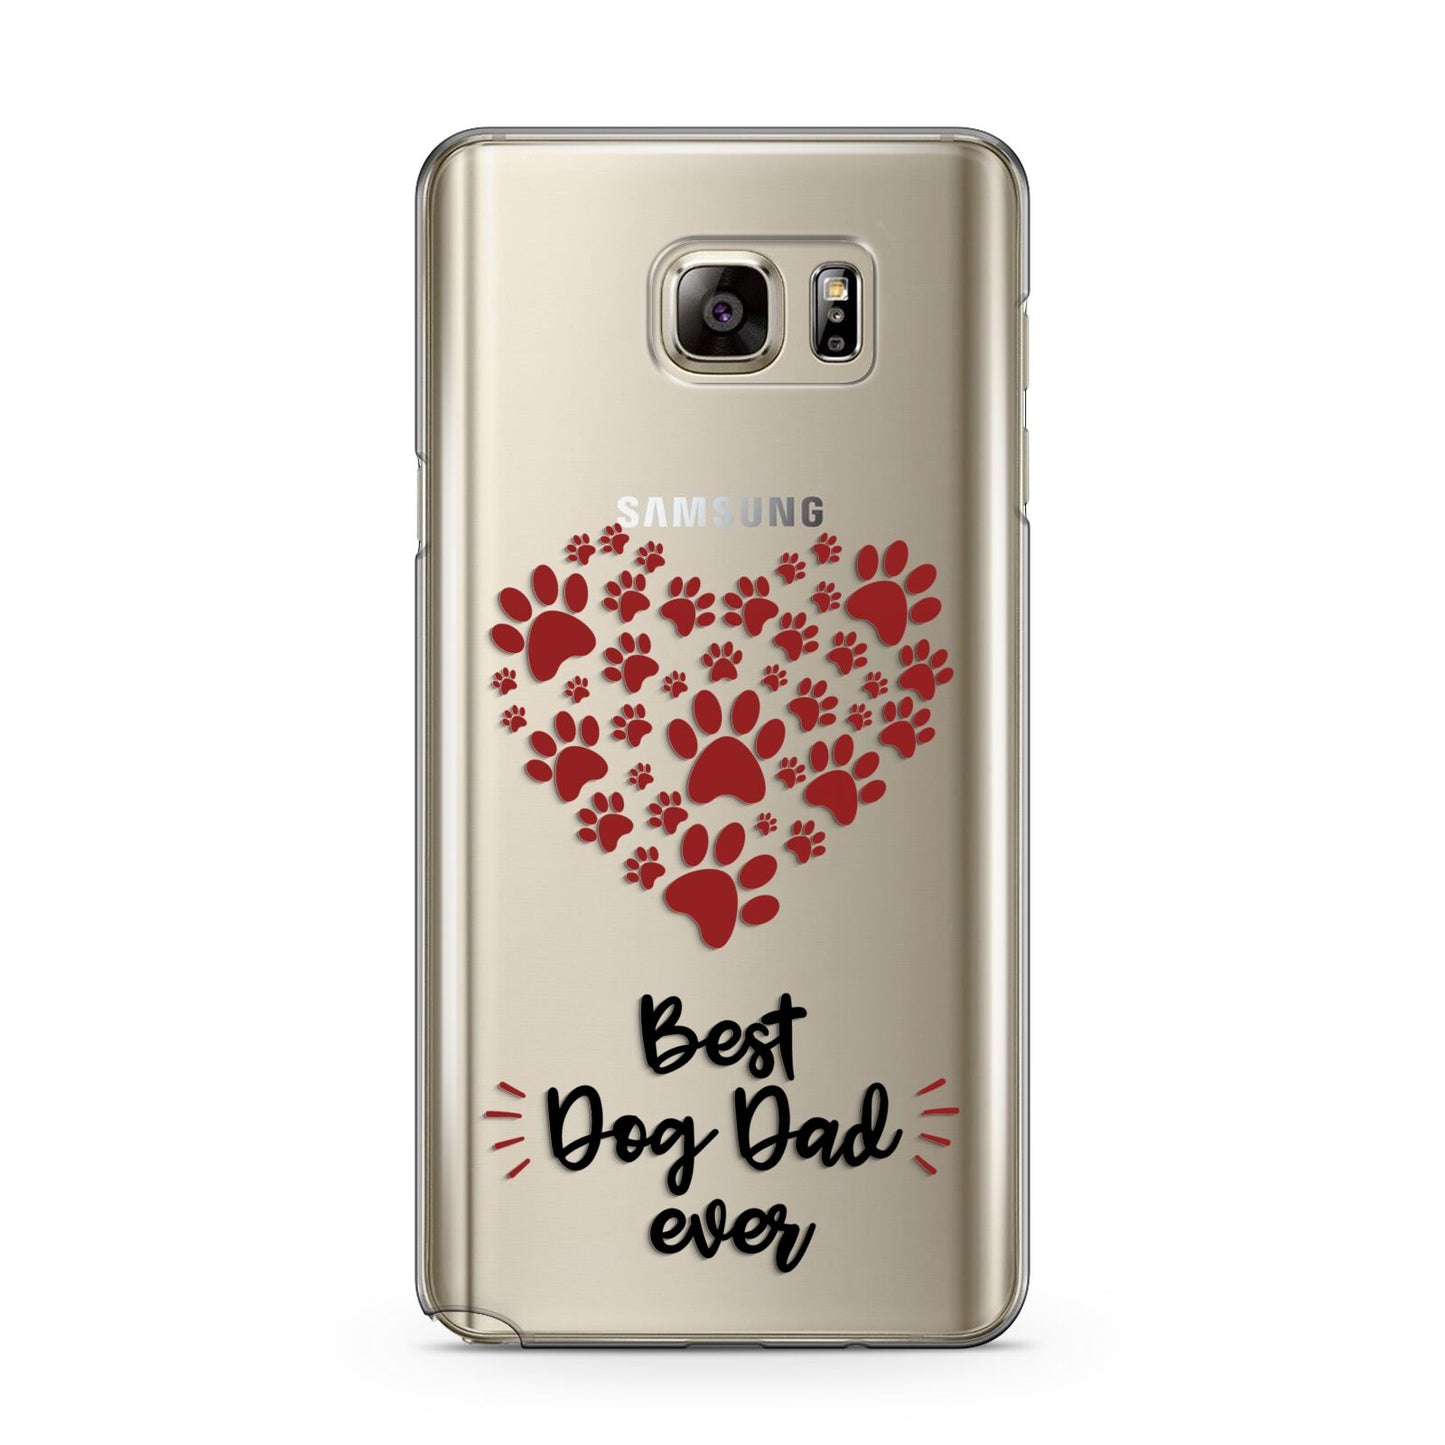 Best Dog Dad Paws Samsung Galaxy Note 5 Case